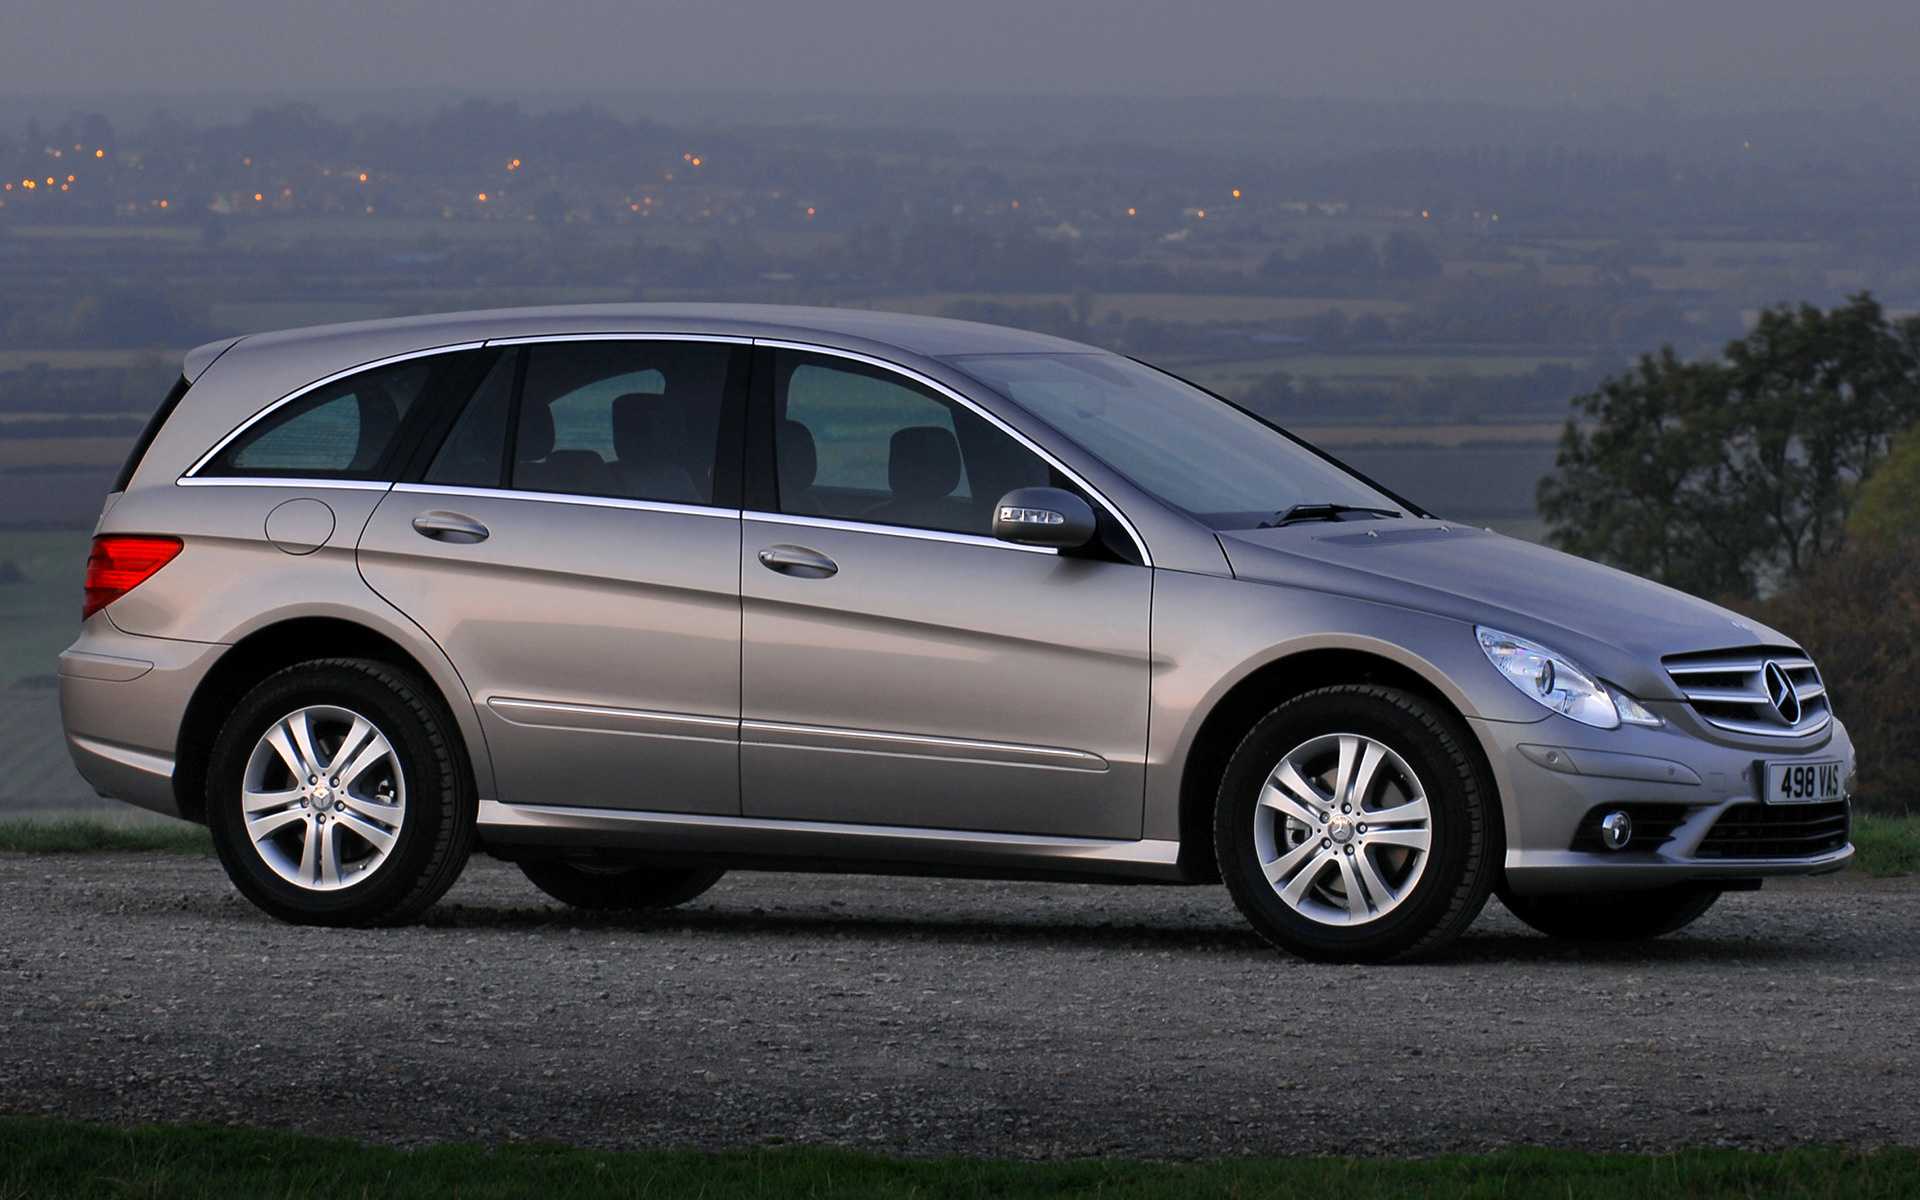 Mercedes-benz r-класс (w251) с 2006 - 2010 — технические характеристики автомобилей